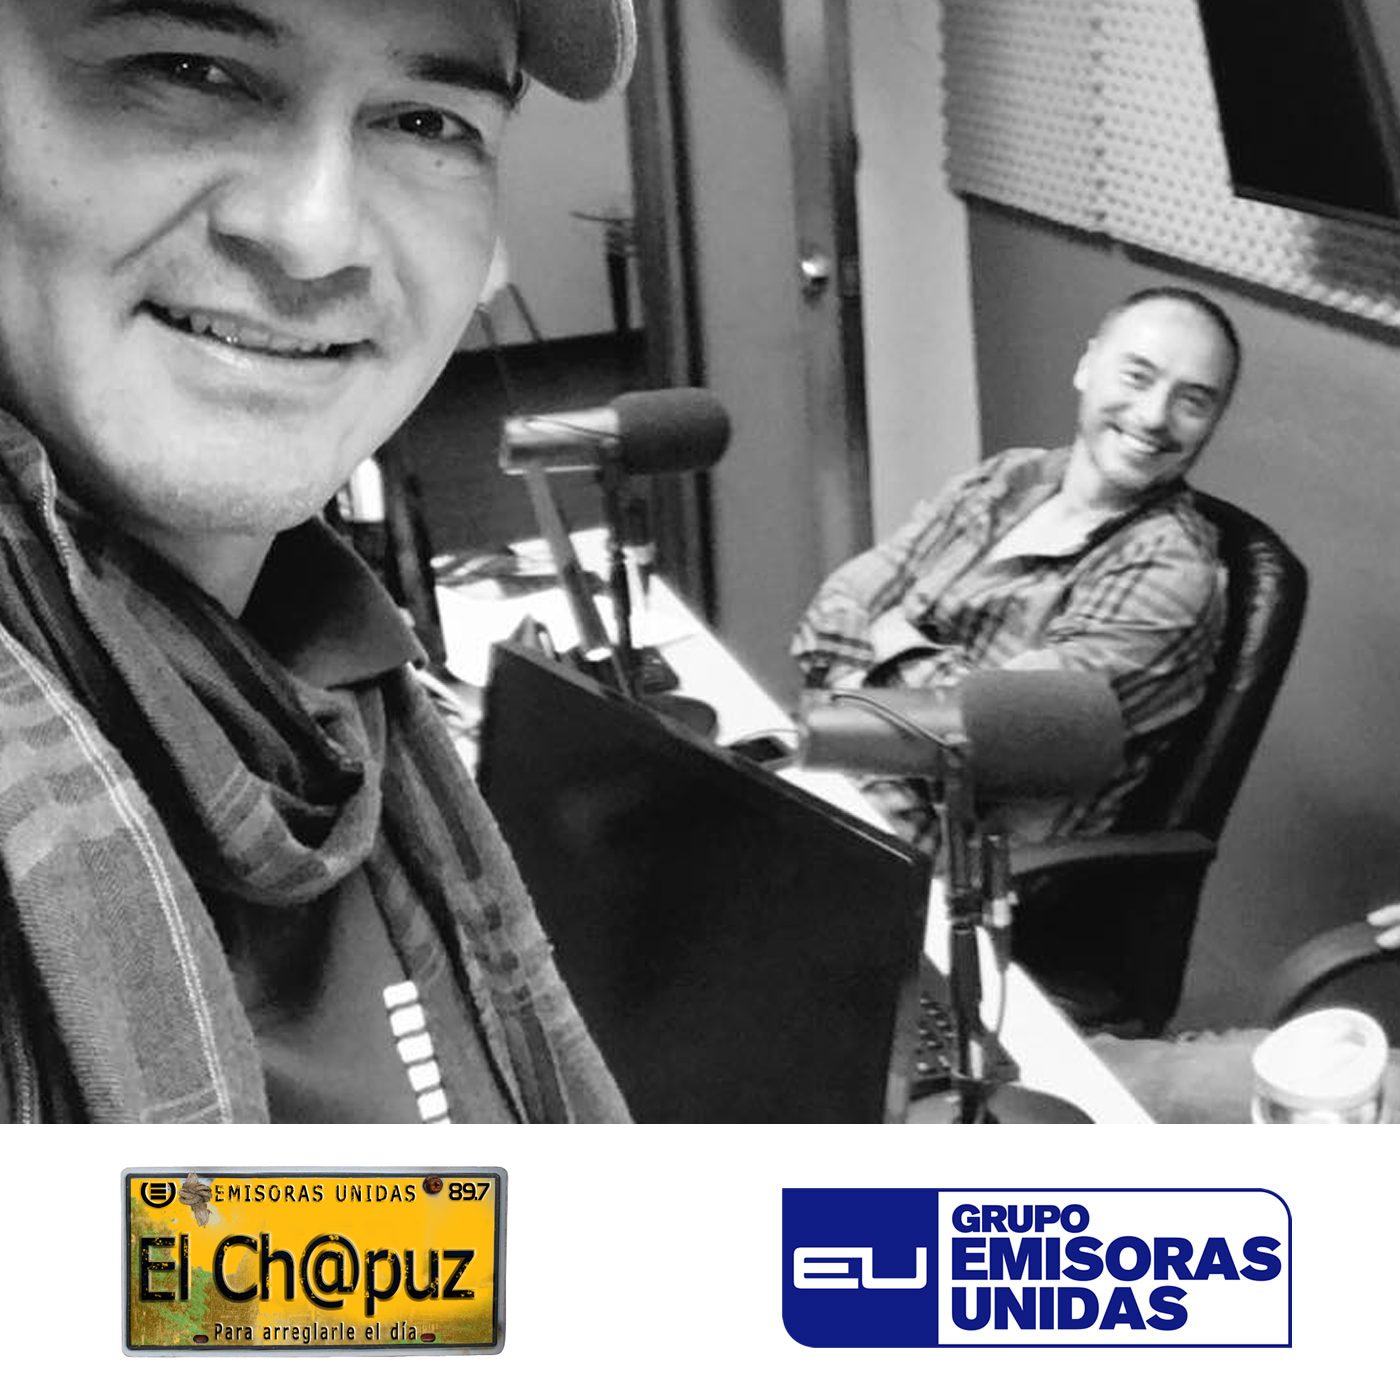 EC028 - El Chapuz - Emisoras unidas - #EnElLibroDeLaR